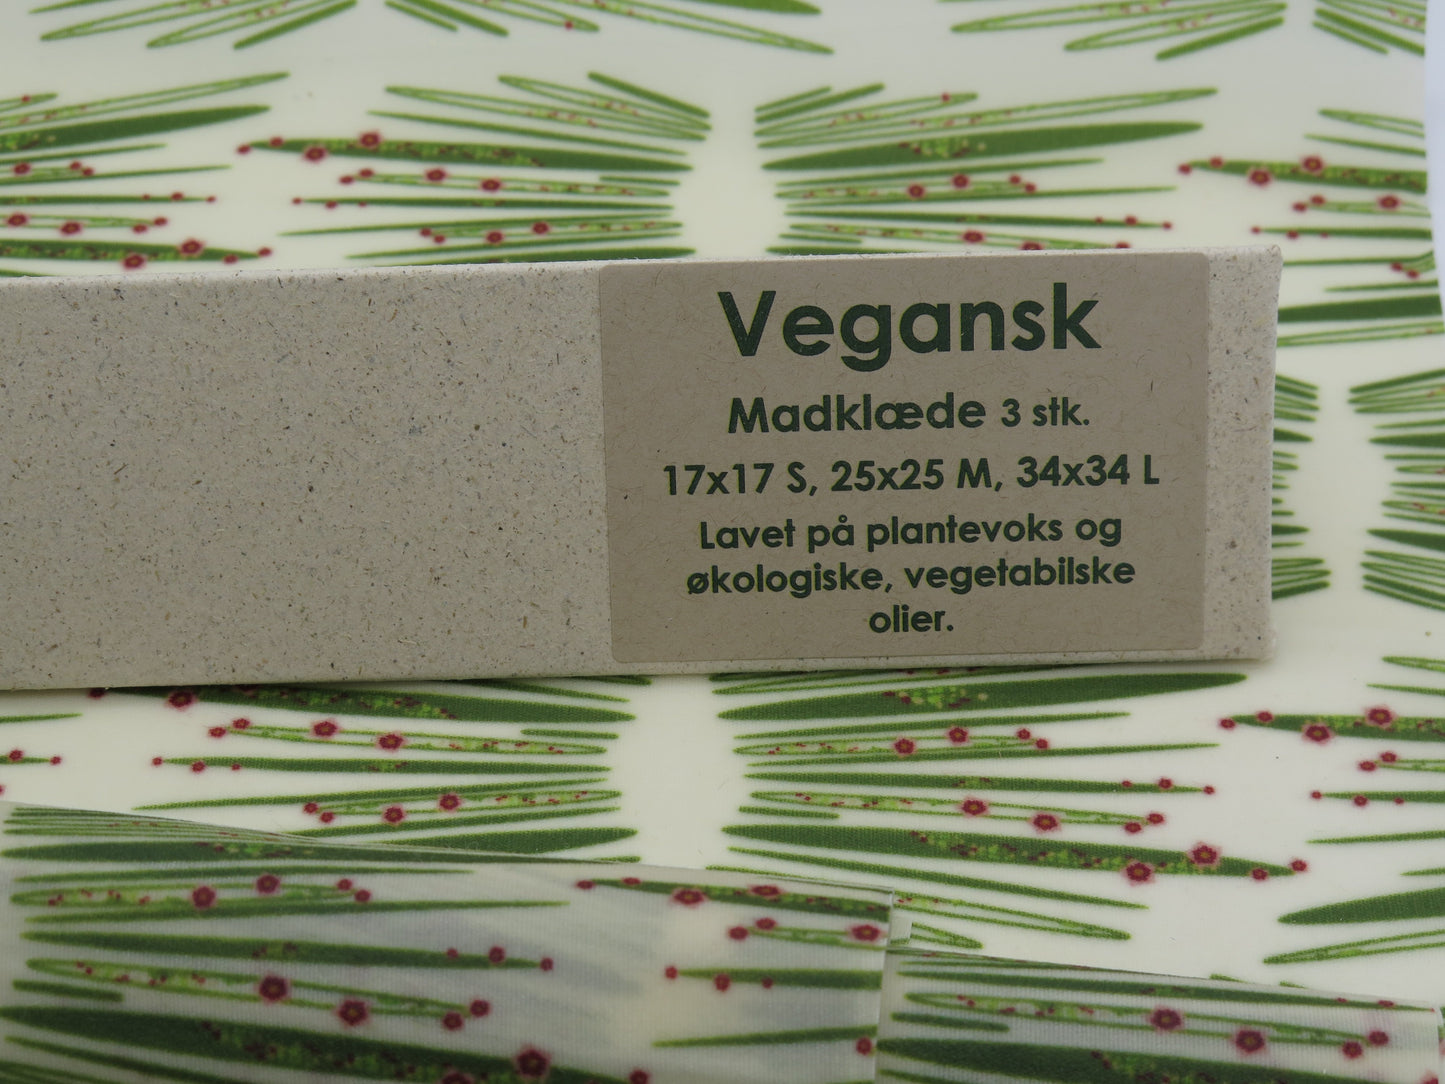 Startpakke - Vegansk - Start din grønne rejse med en bivokspapir startpakke